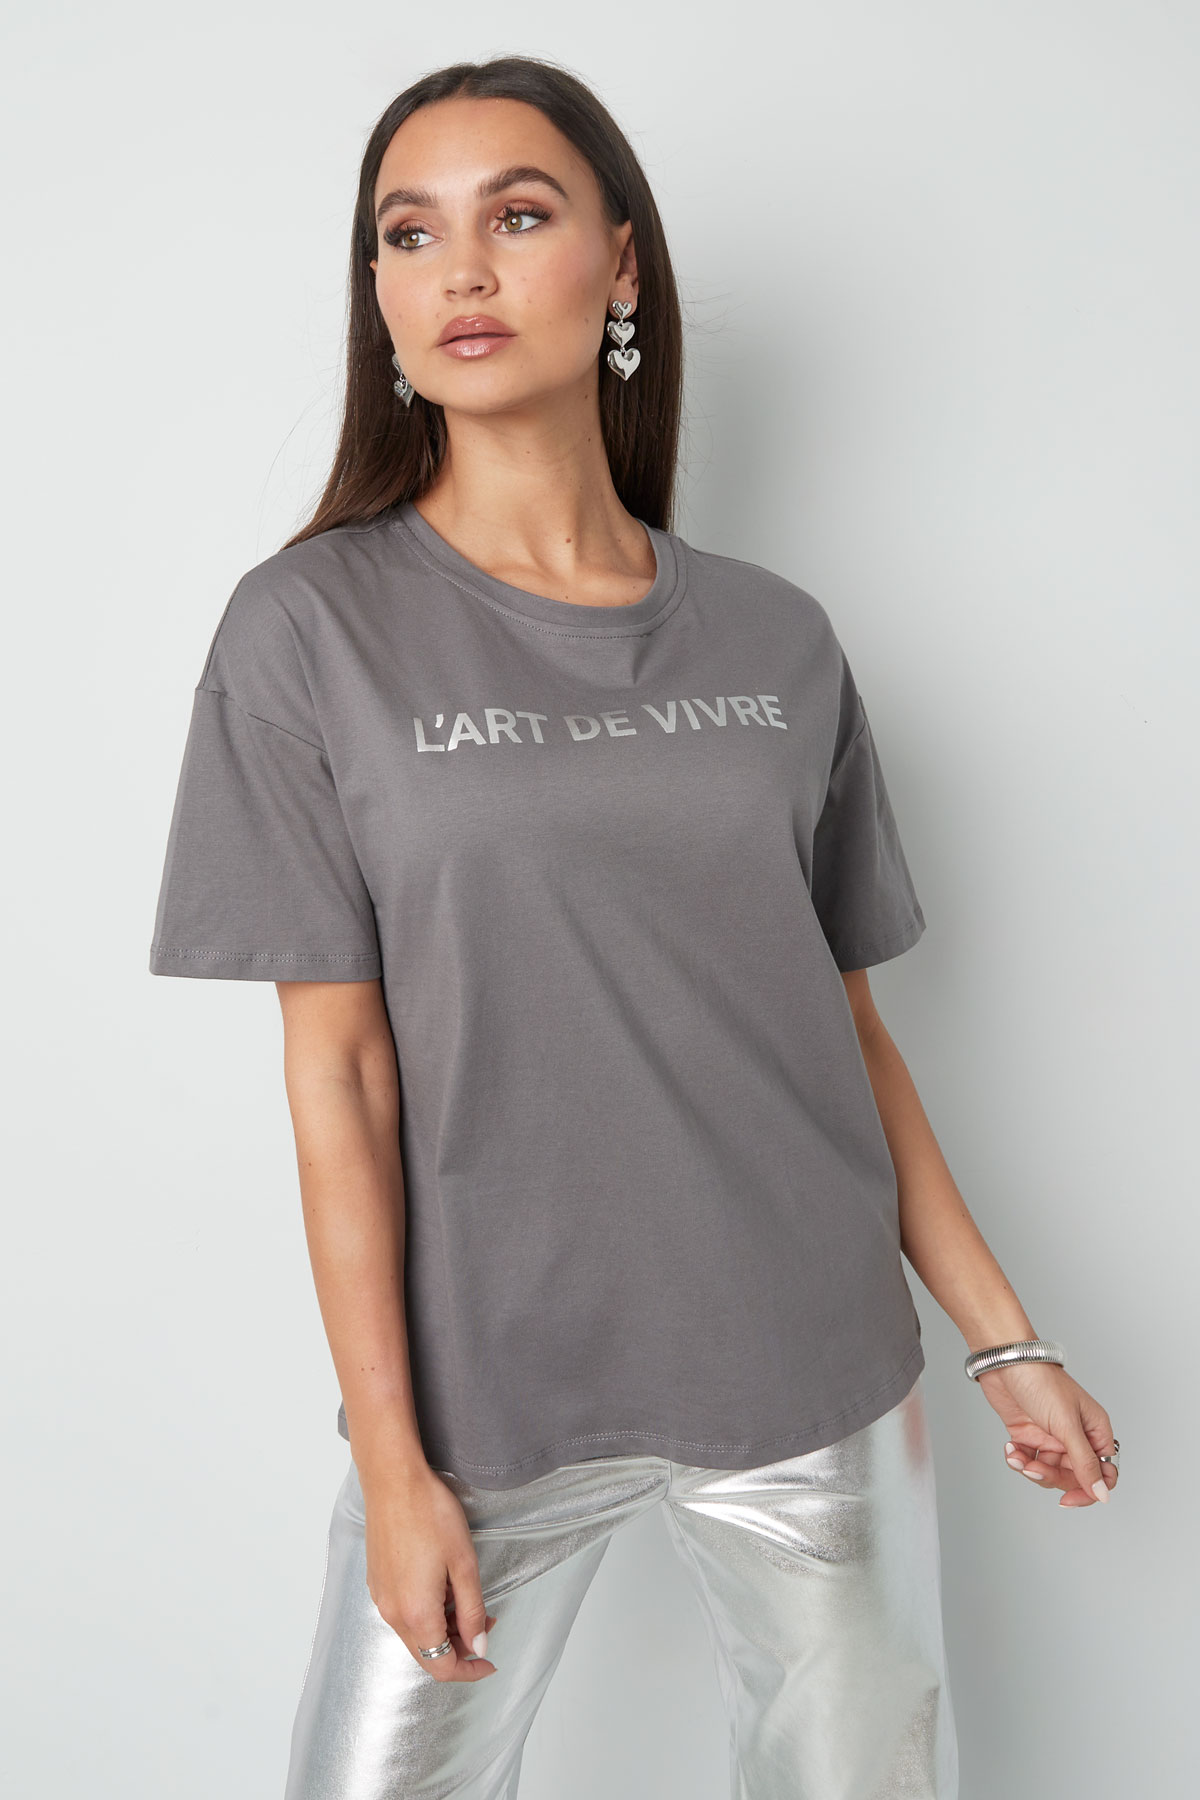 T-shirt l'art de vivre - gris rose Image2